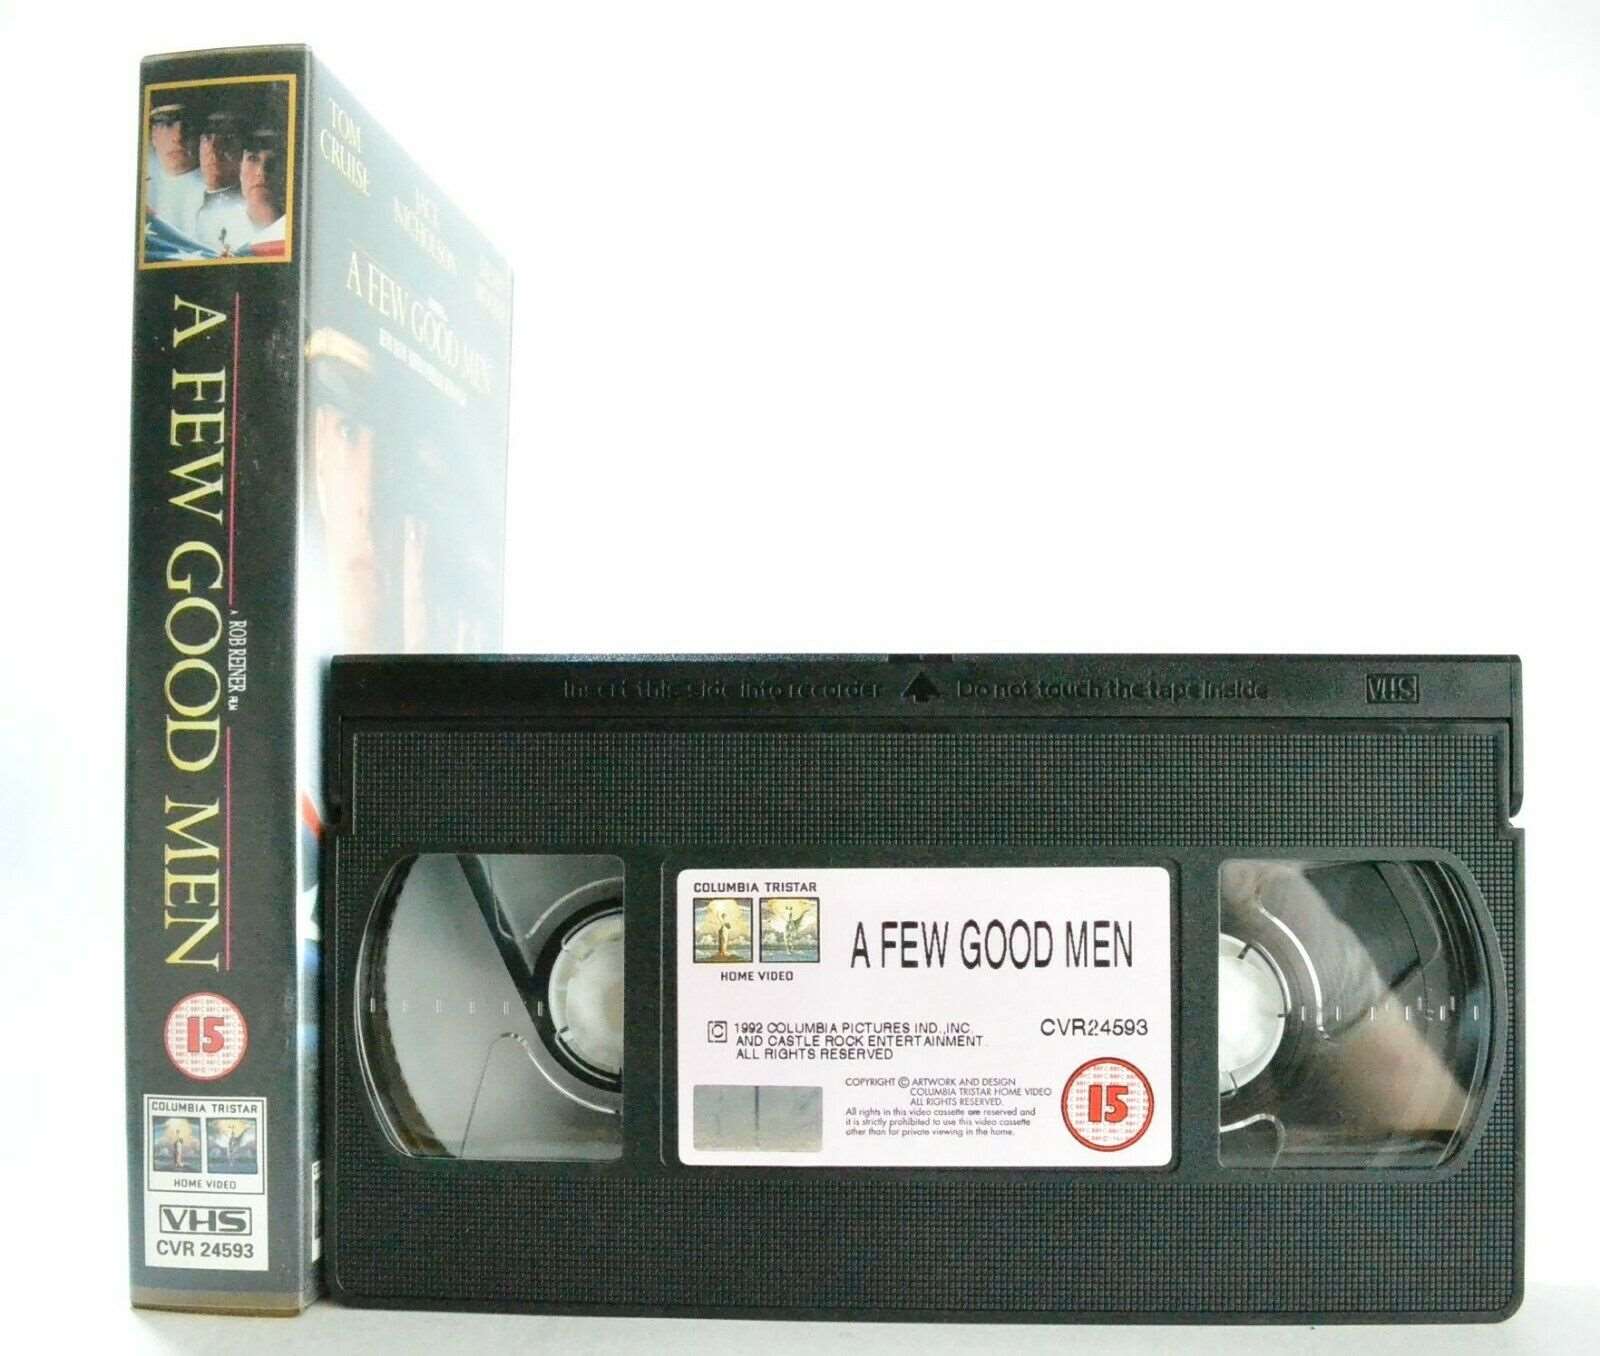 A Few Good Men: A R.Reiner Film - Court Drama - T.Cruise/J.Nicholson - Pal VHS-